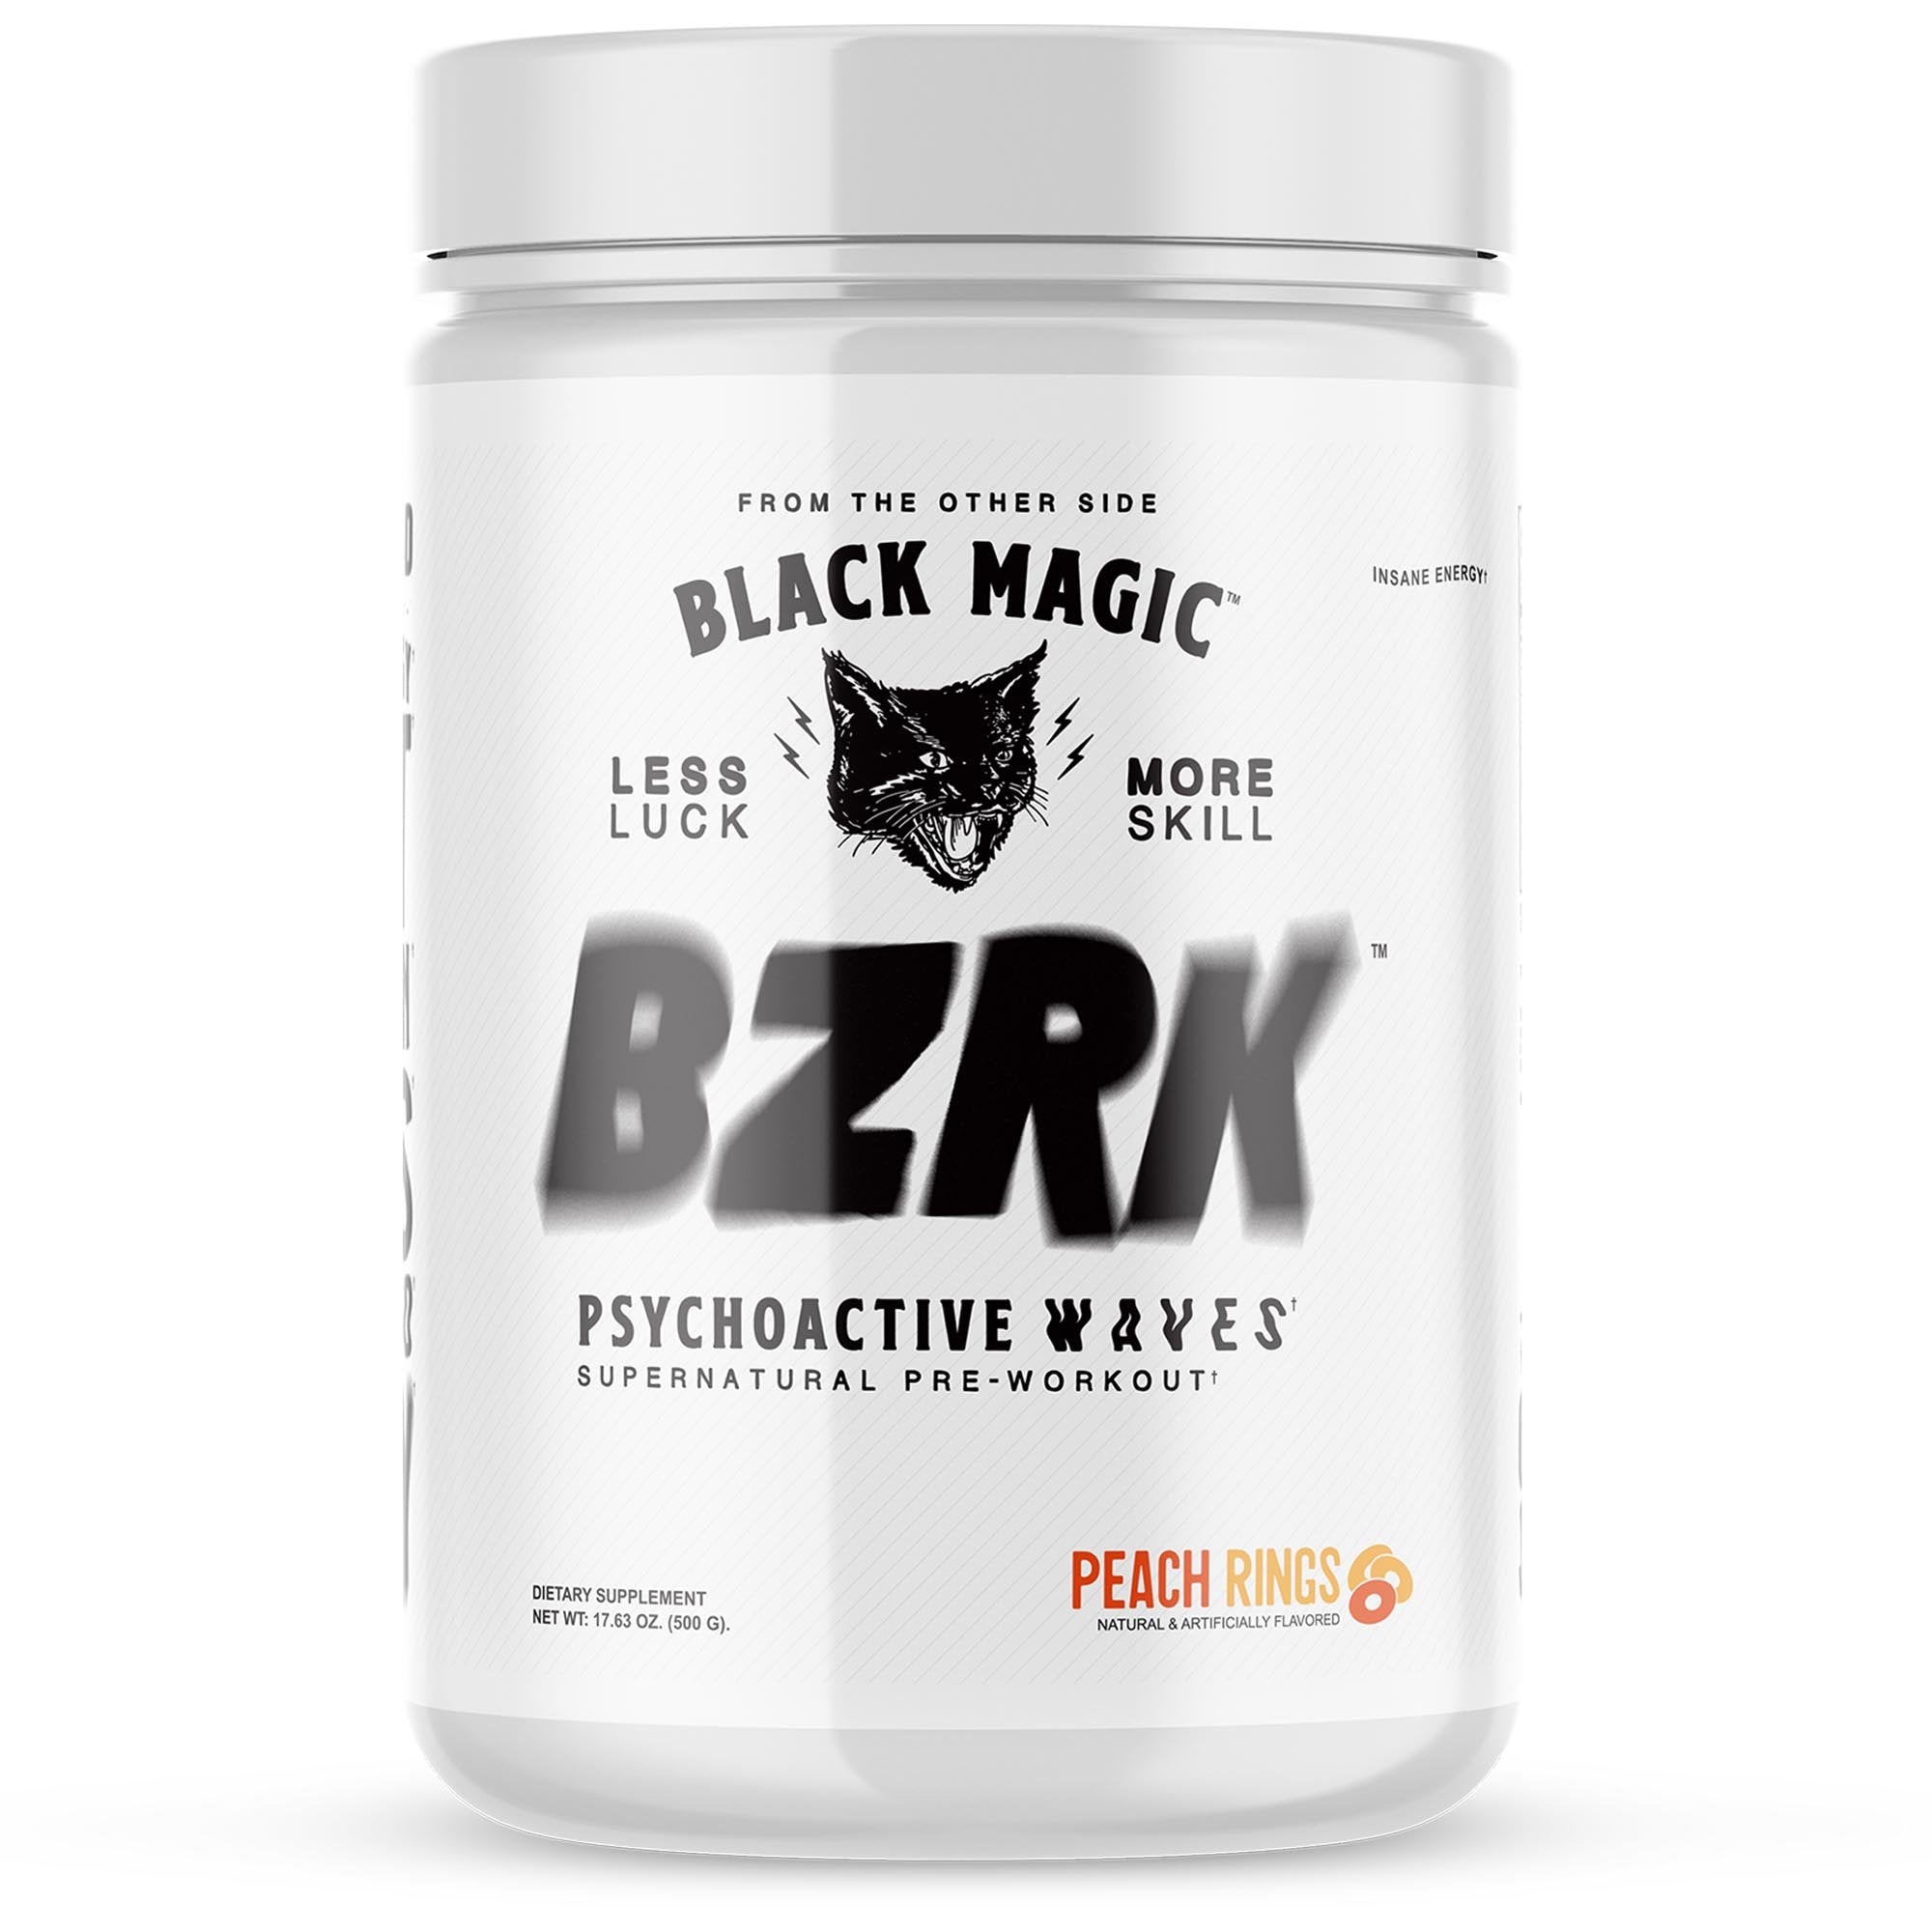 Black Magic - BZRK Pre-workout